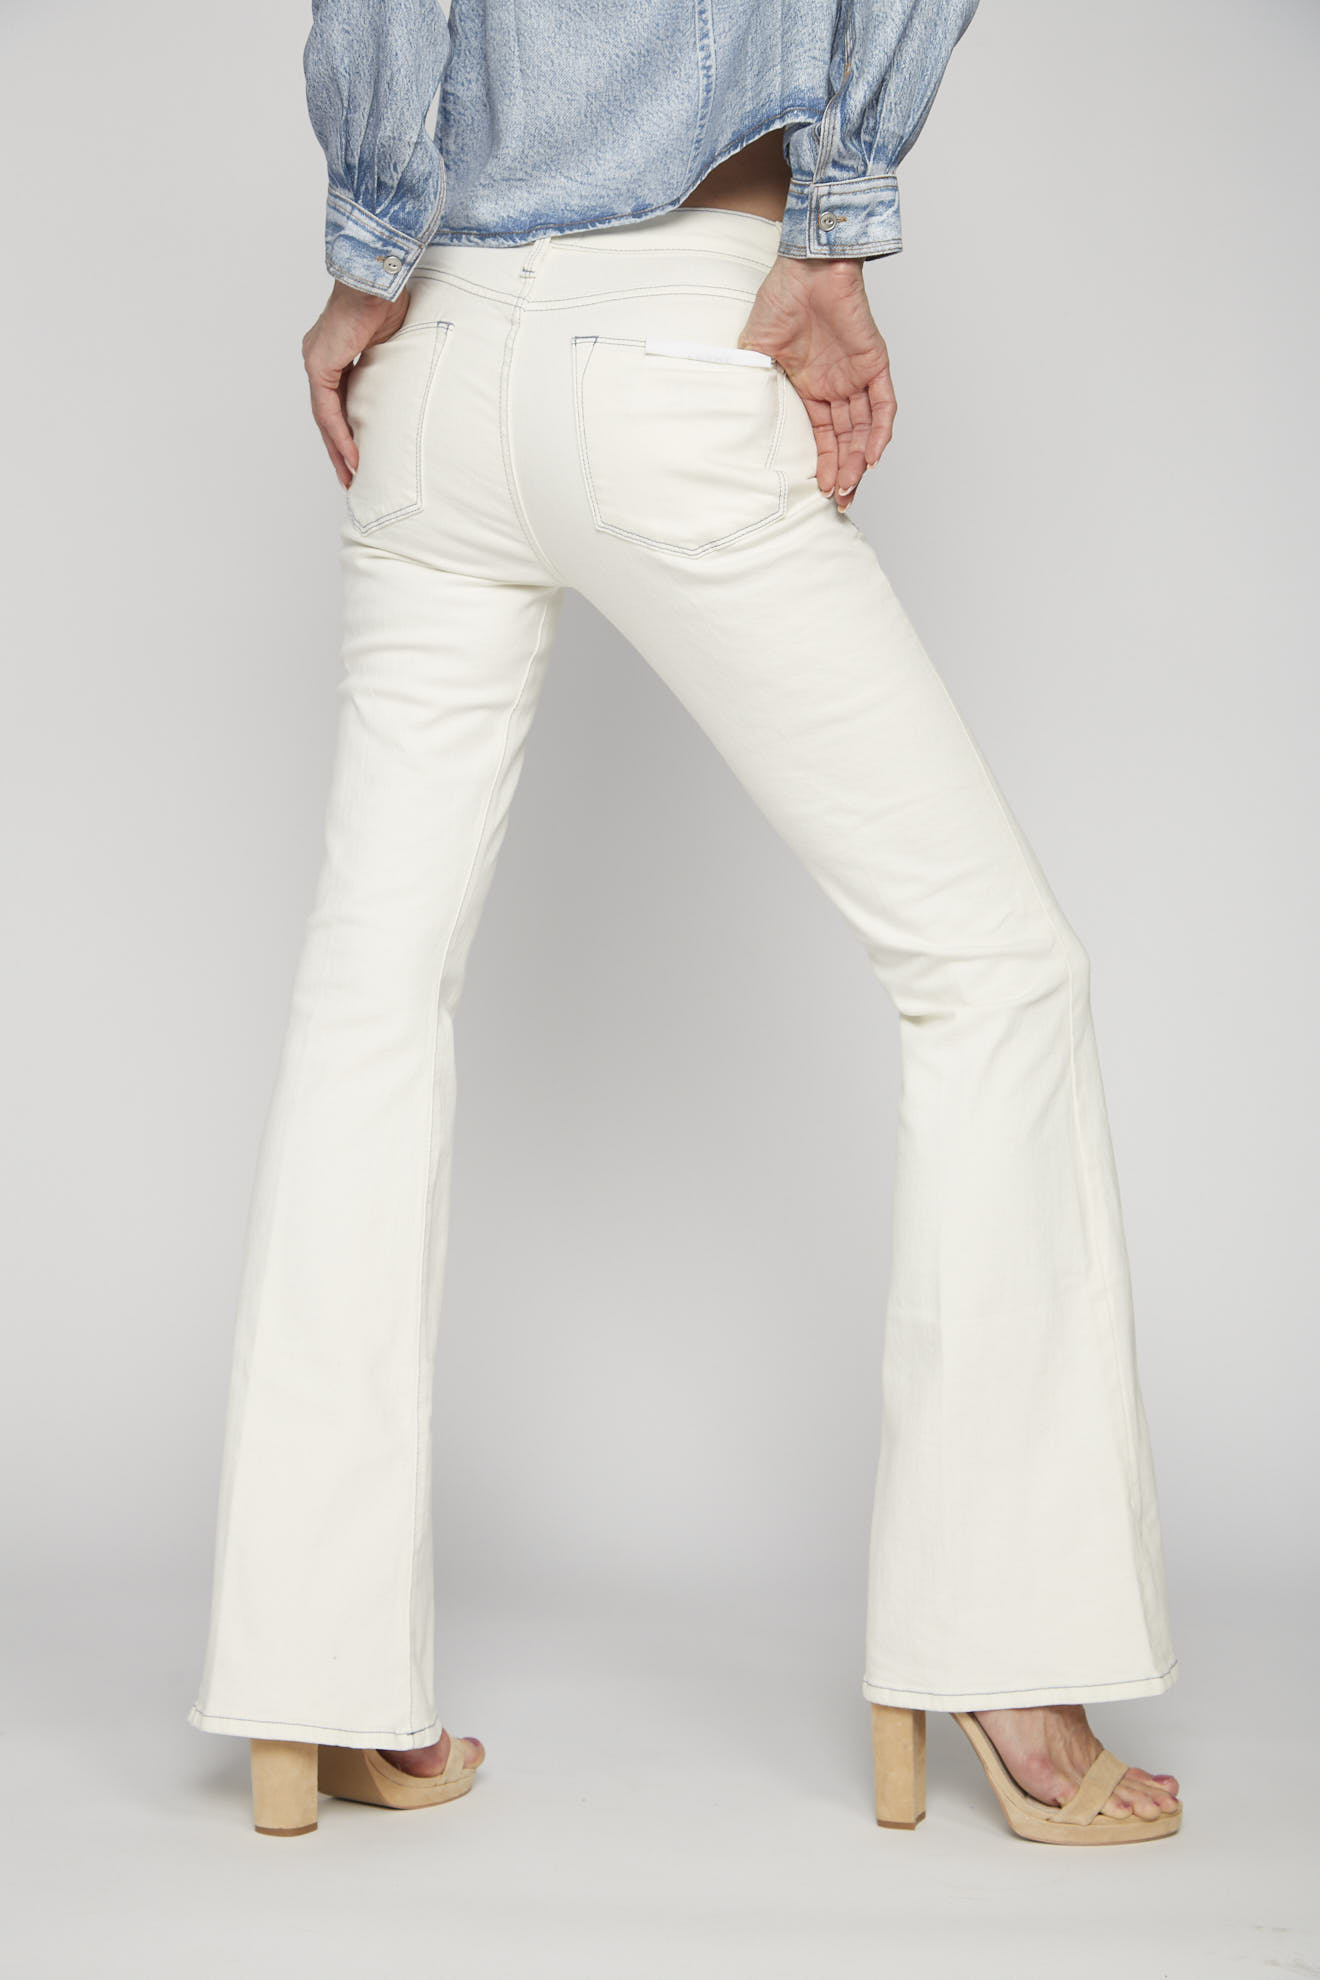 frame jeans white plain mix model back